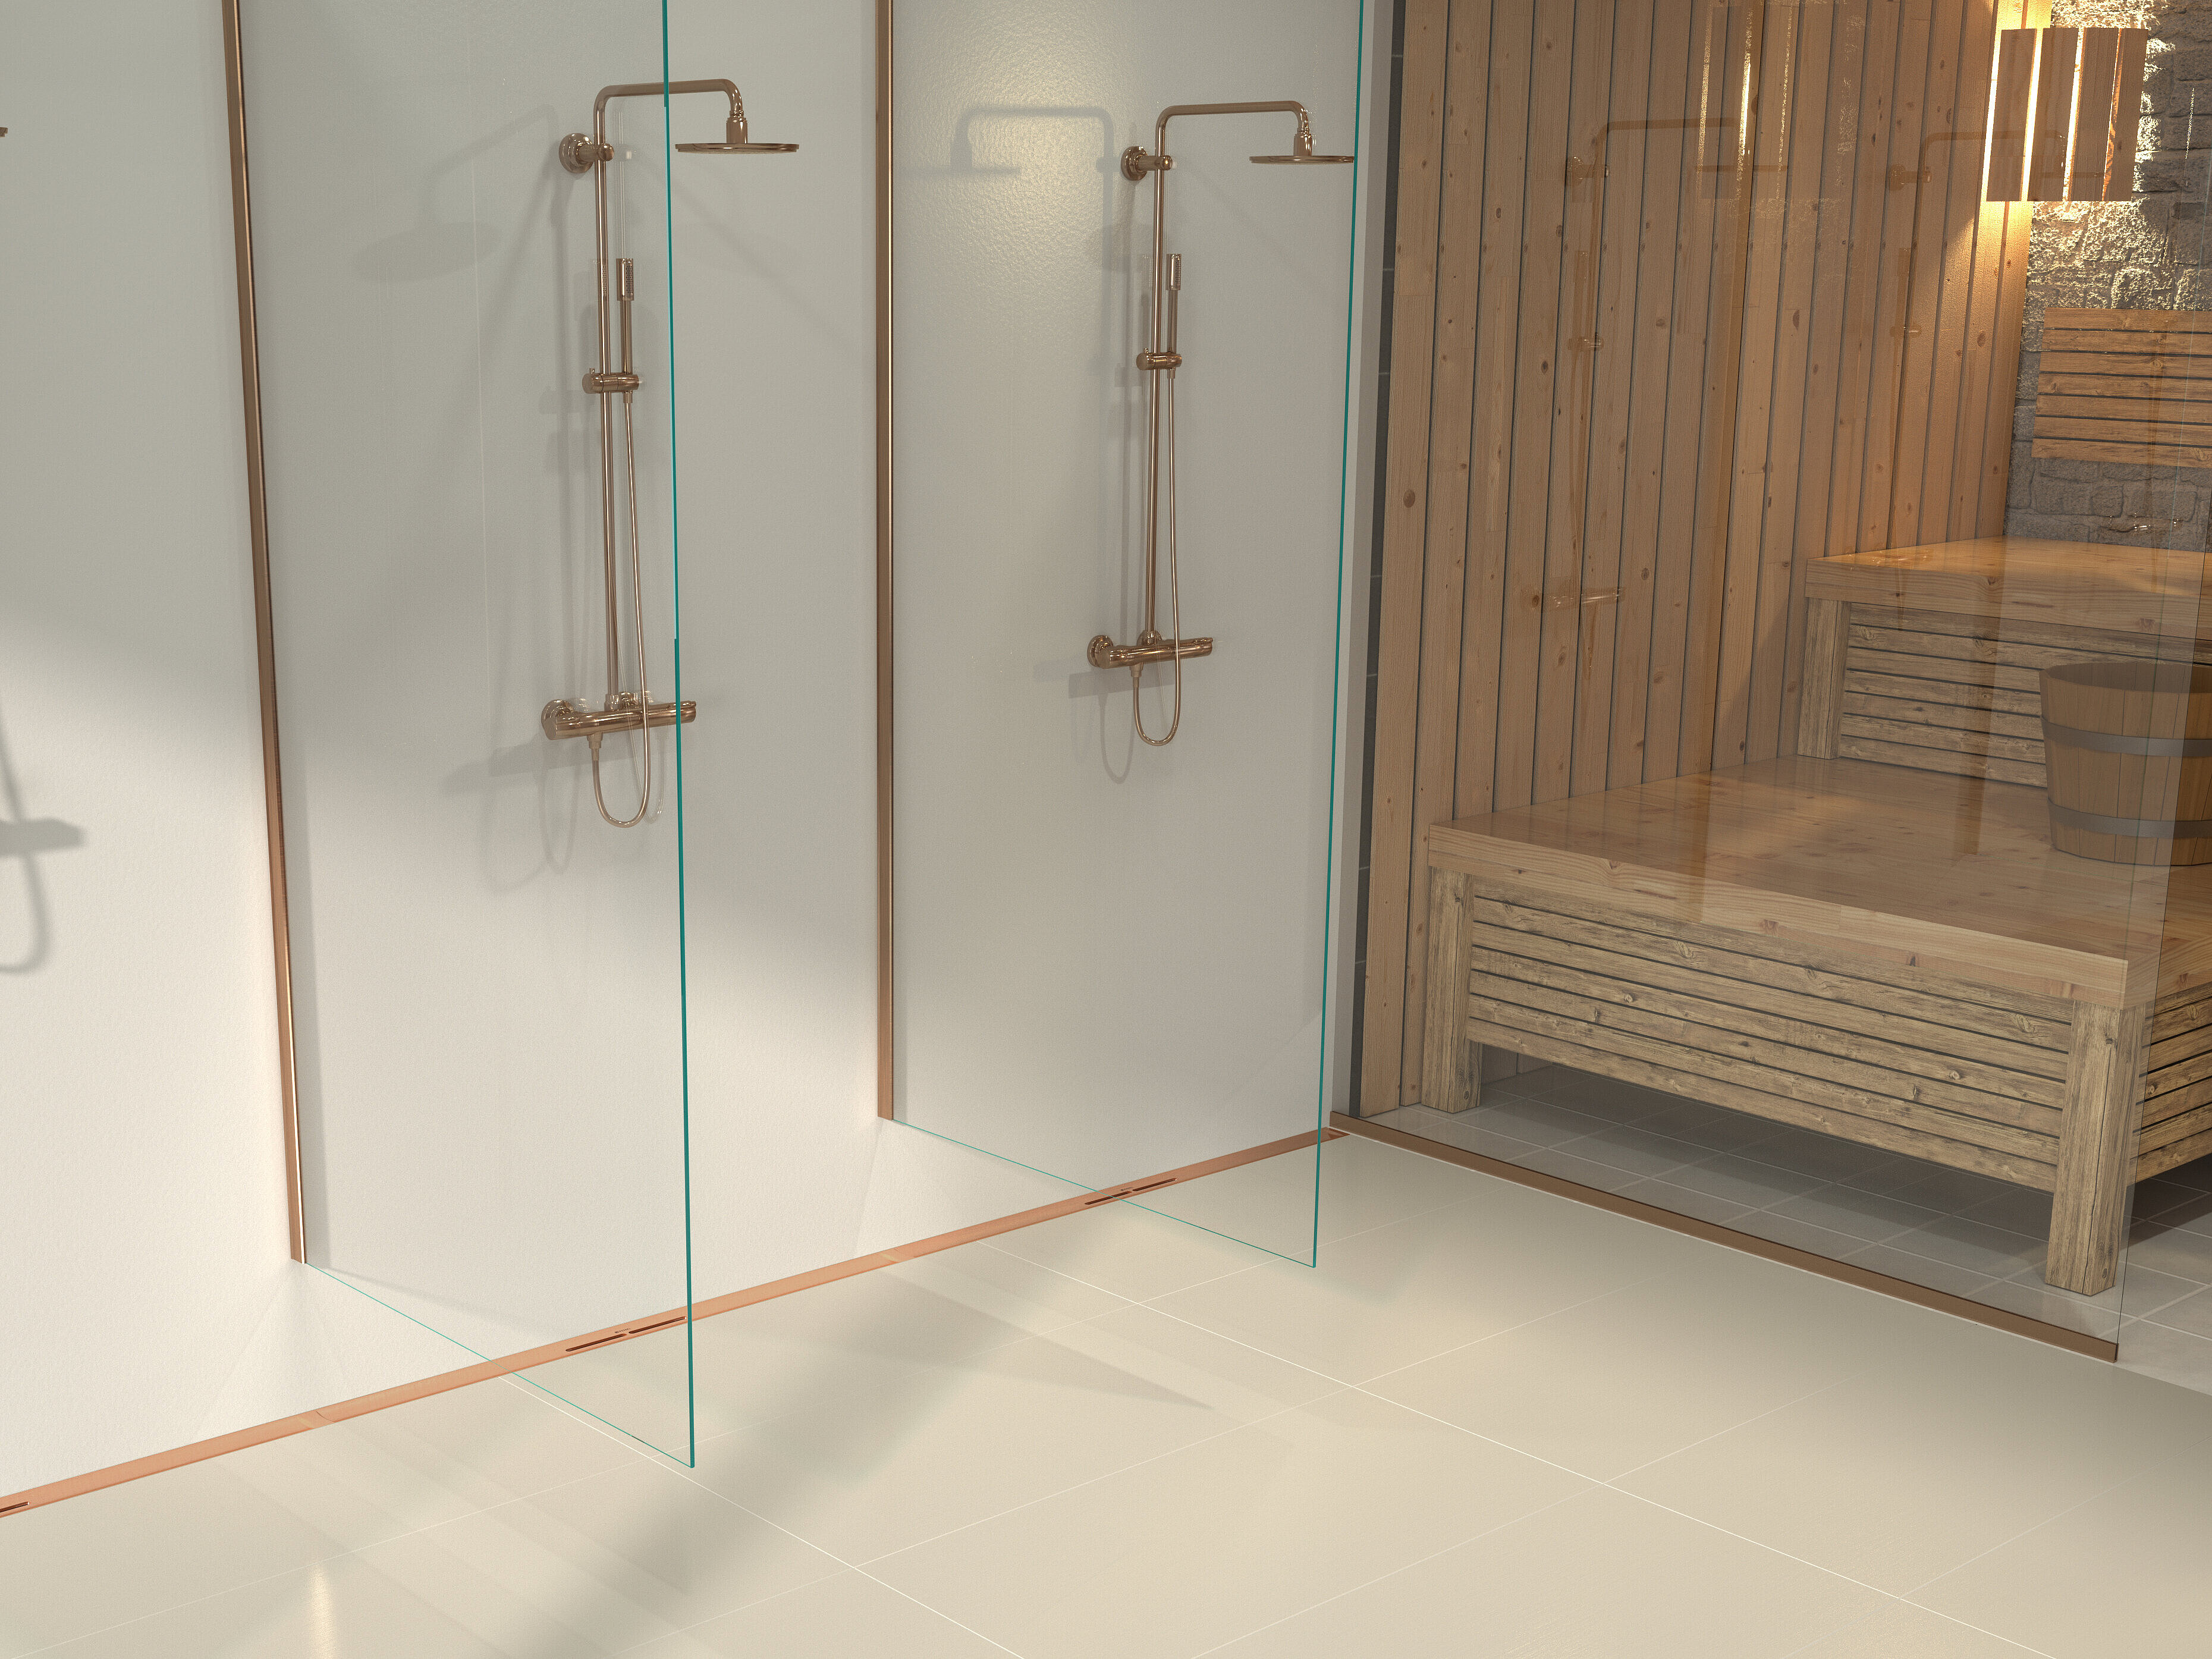 Schéma de montage du caniveau de douche Linearis Infinity, surface Bronze brossé, dans un espace bien-être